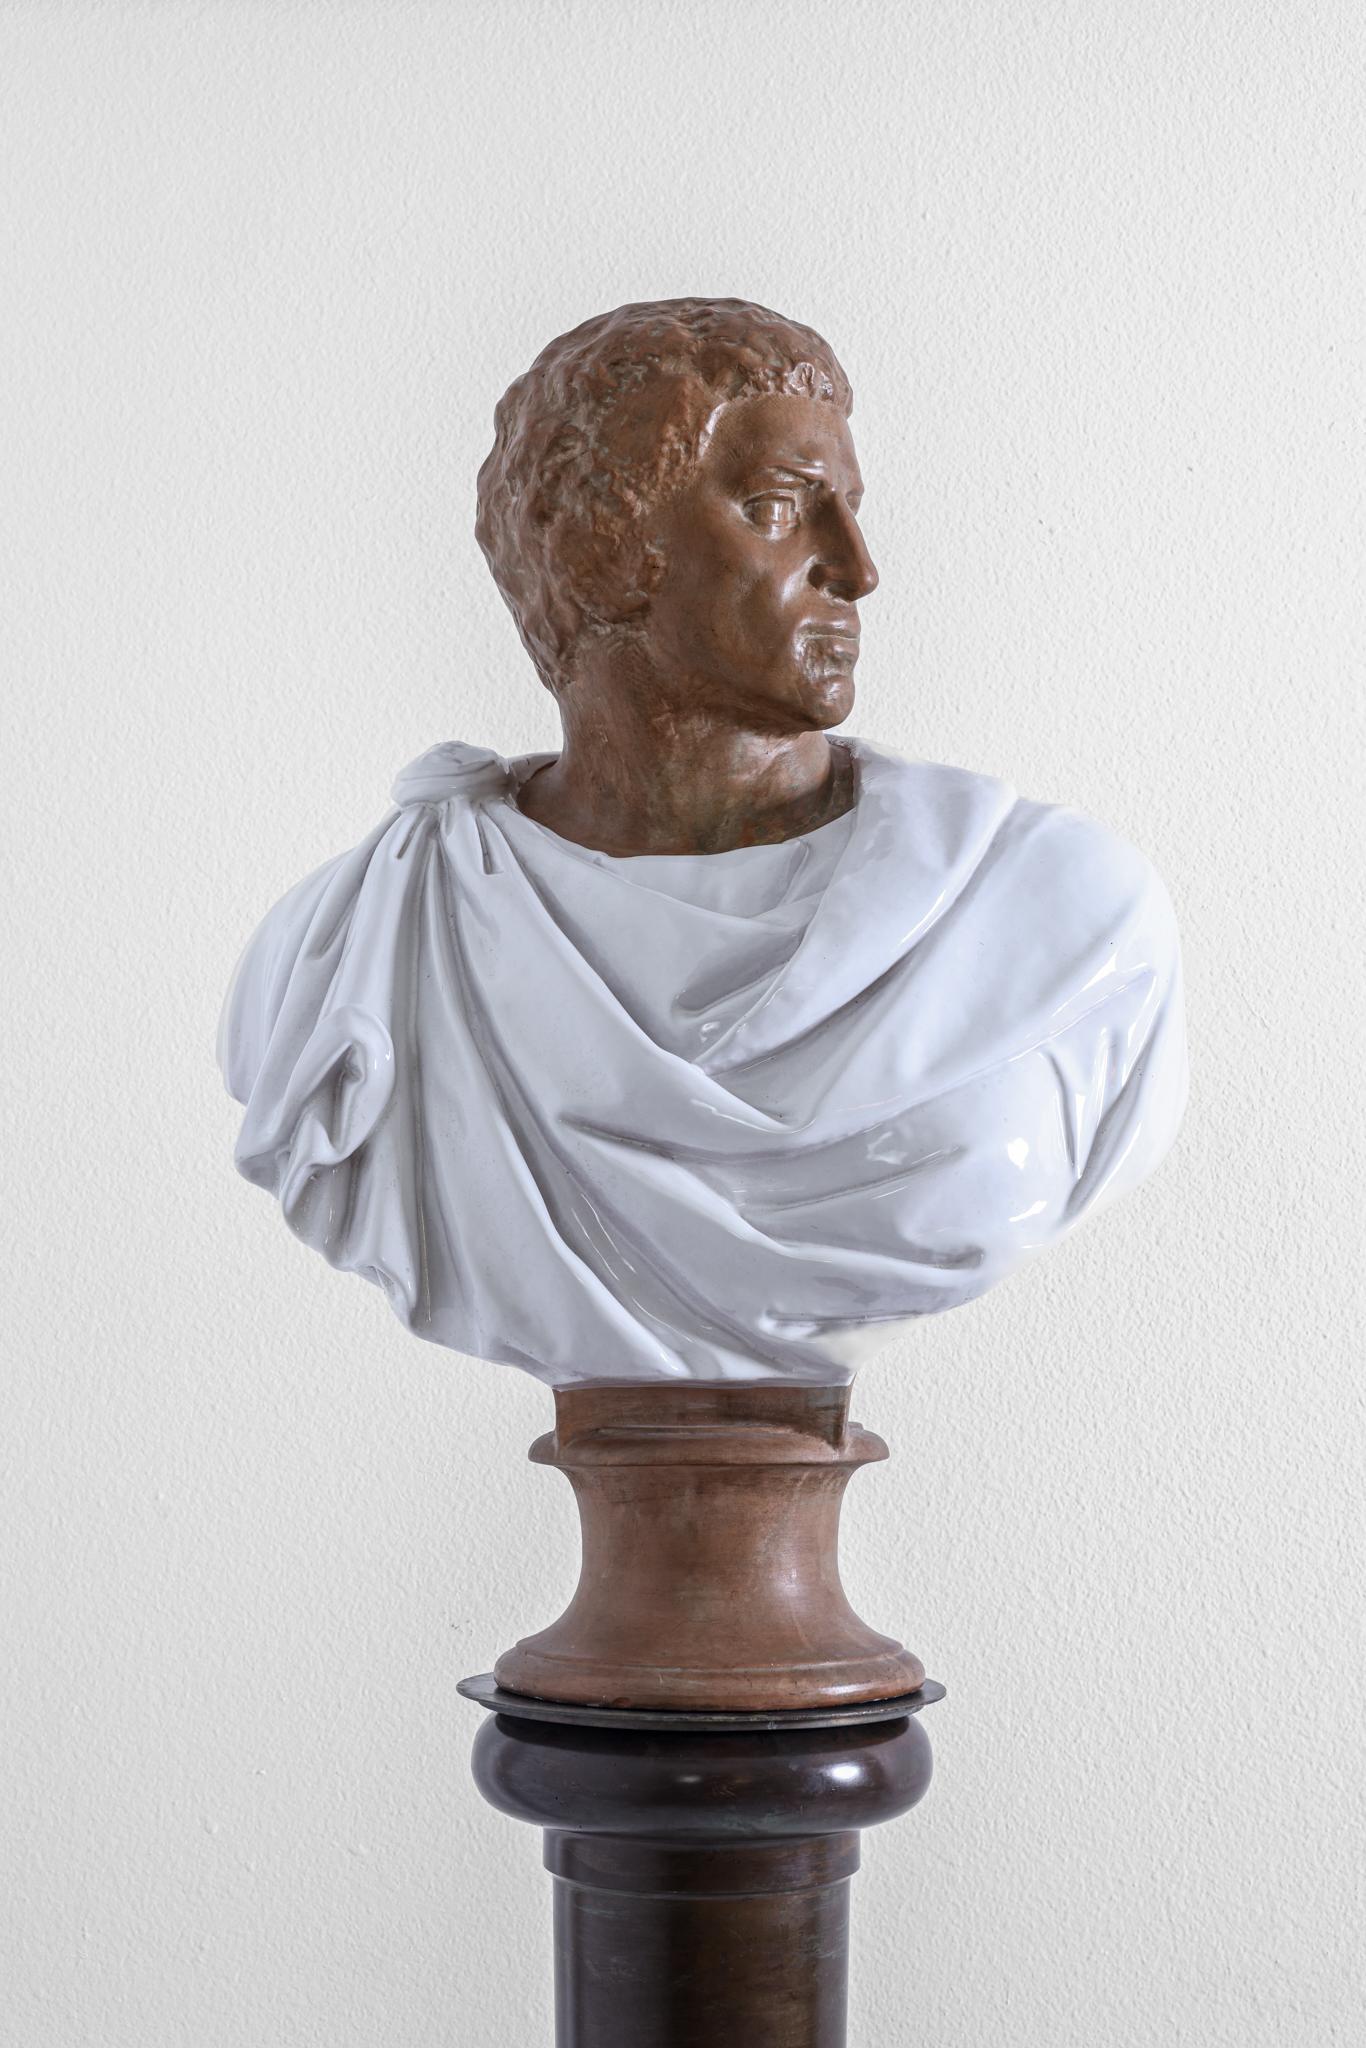 Cette sculpture en terre cuite représente sans doute le buste d'un empereur ou d'un sénateur romain en costume classique regardant par-dessus son épaule gauche. Il s'agit d'un buste grandeur nature magnifiquement robuste. Sa robe a été cuite dans